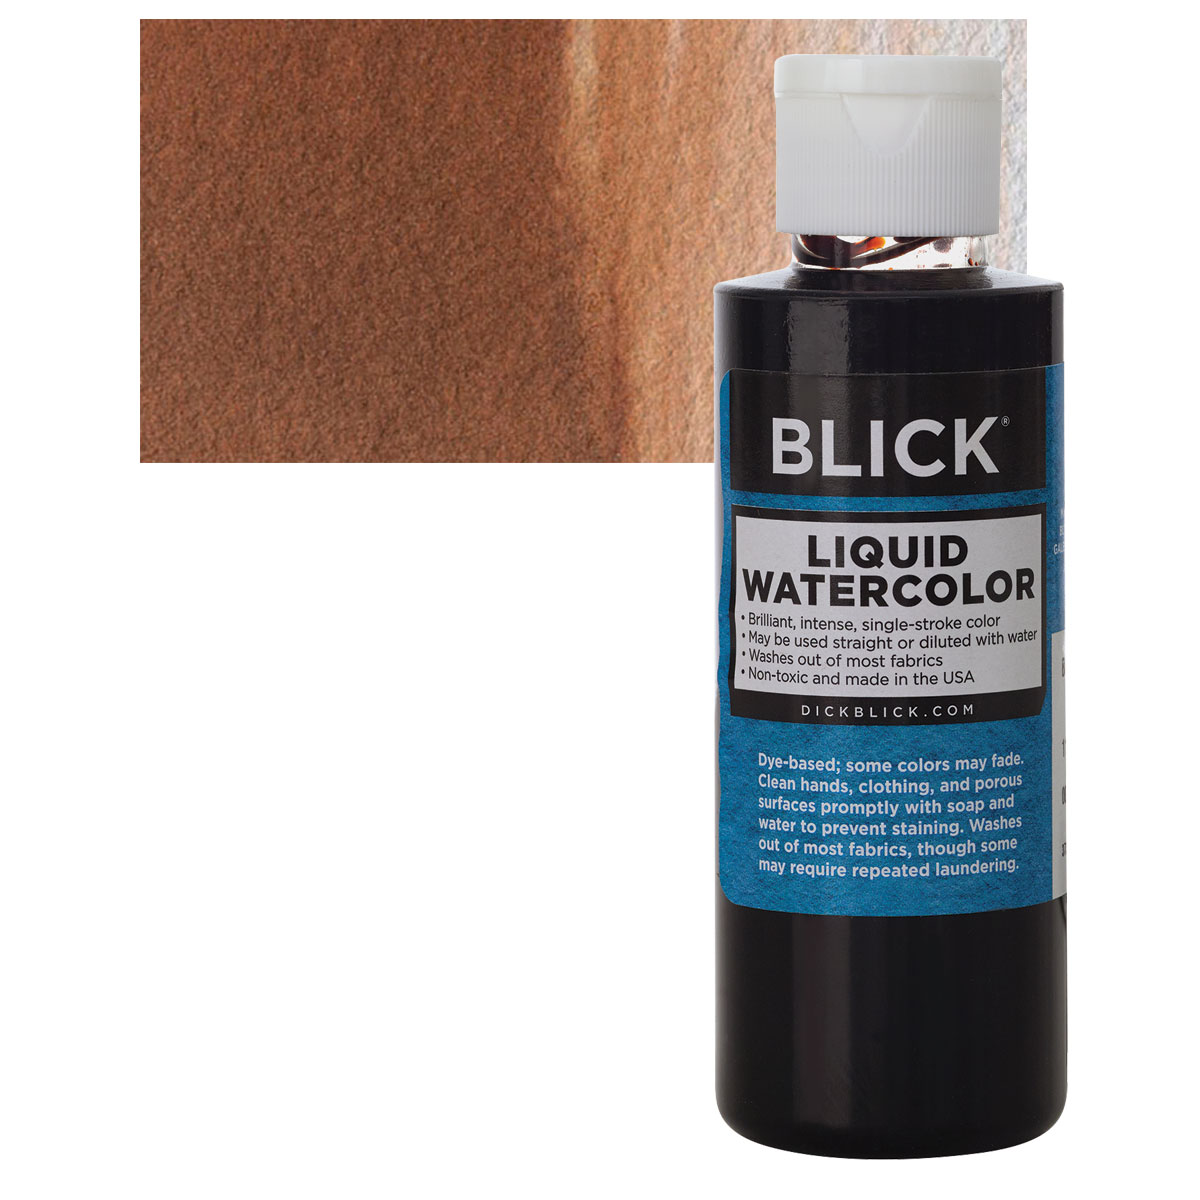 Blick Liquid Watercolor - Metallic Copper, 8 oz bottle